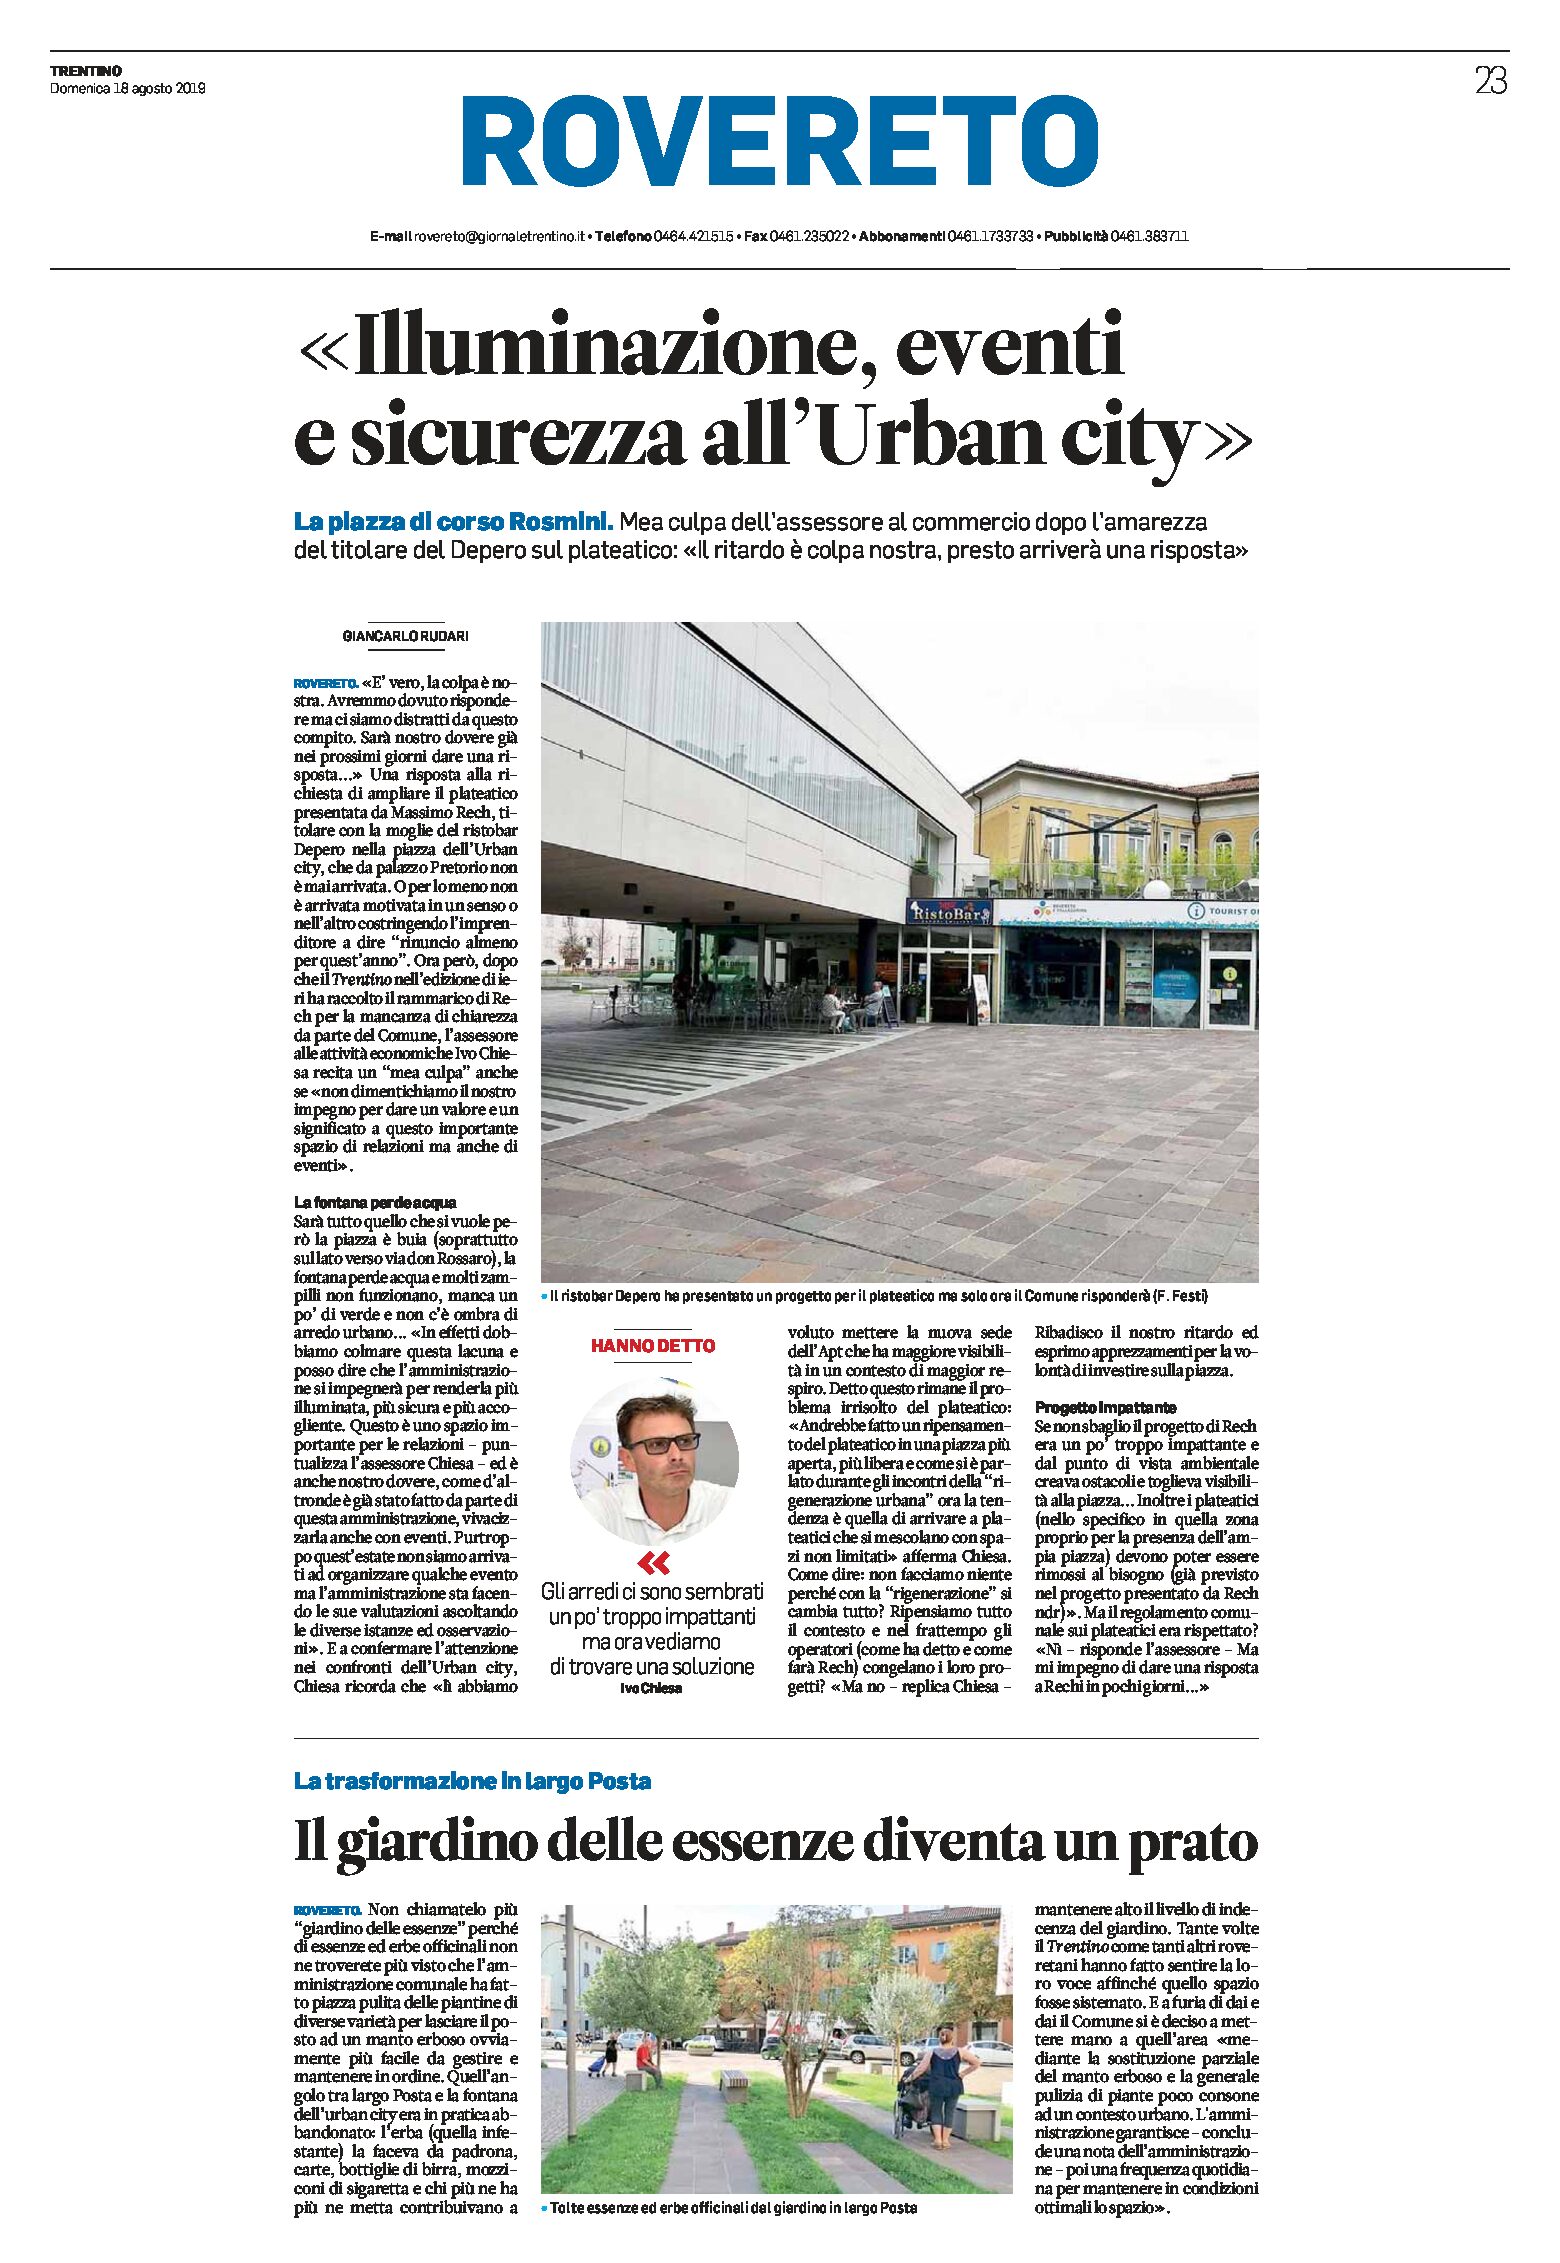 Rovereto: illuminazione, eventi e sicurezza all’Urban city